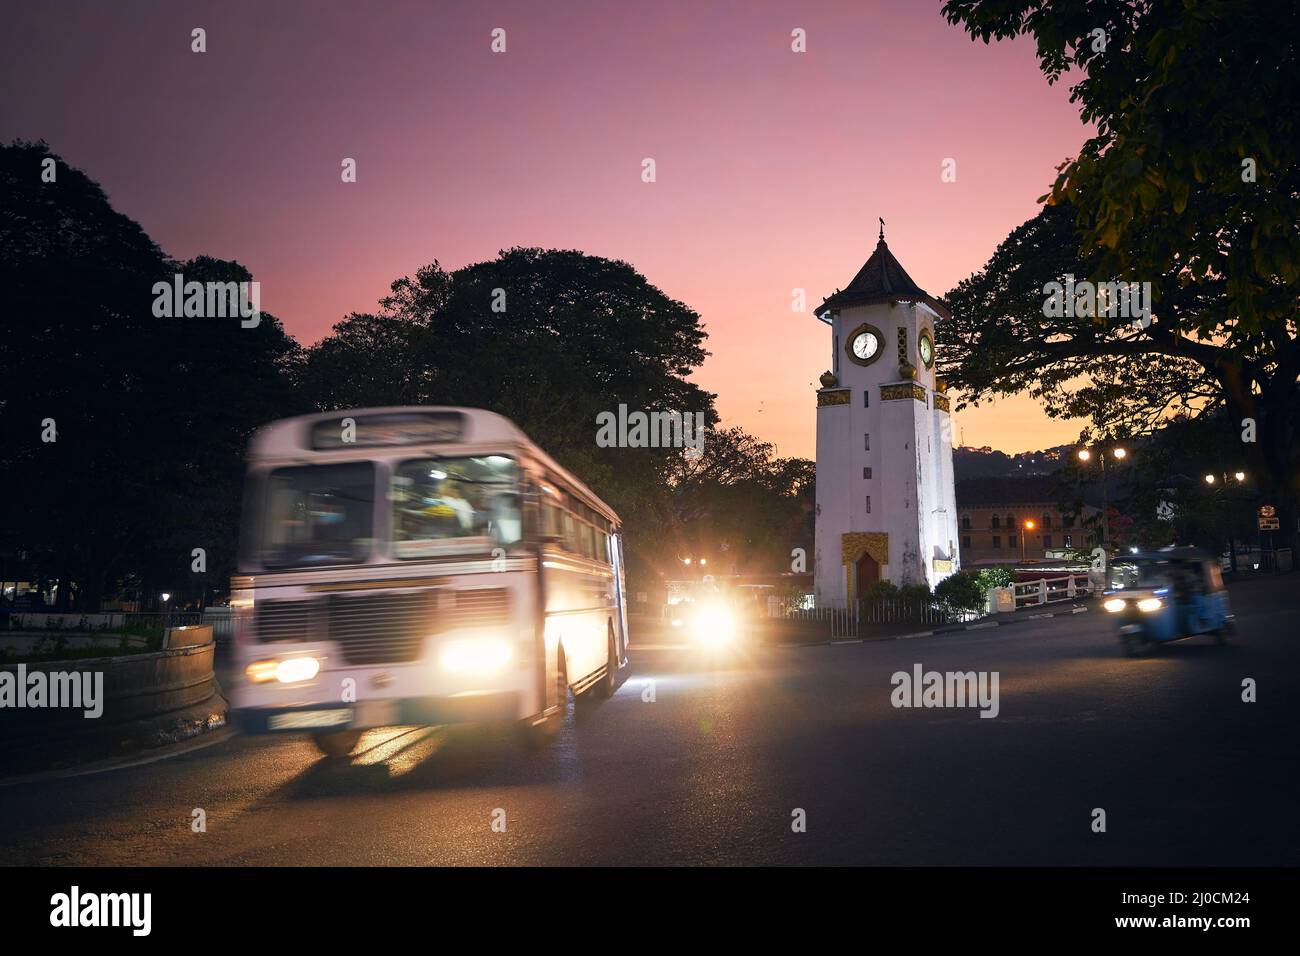 Autobus e tuk tuk in movimento sfocato all'incrocio al bellissimo tramonto. Traffico intorno alla torre dell'orologio in strada a Kandy, Sri Lanka. Foto Stock